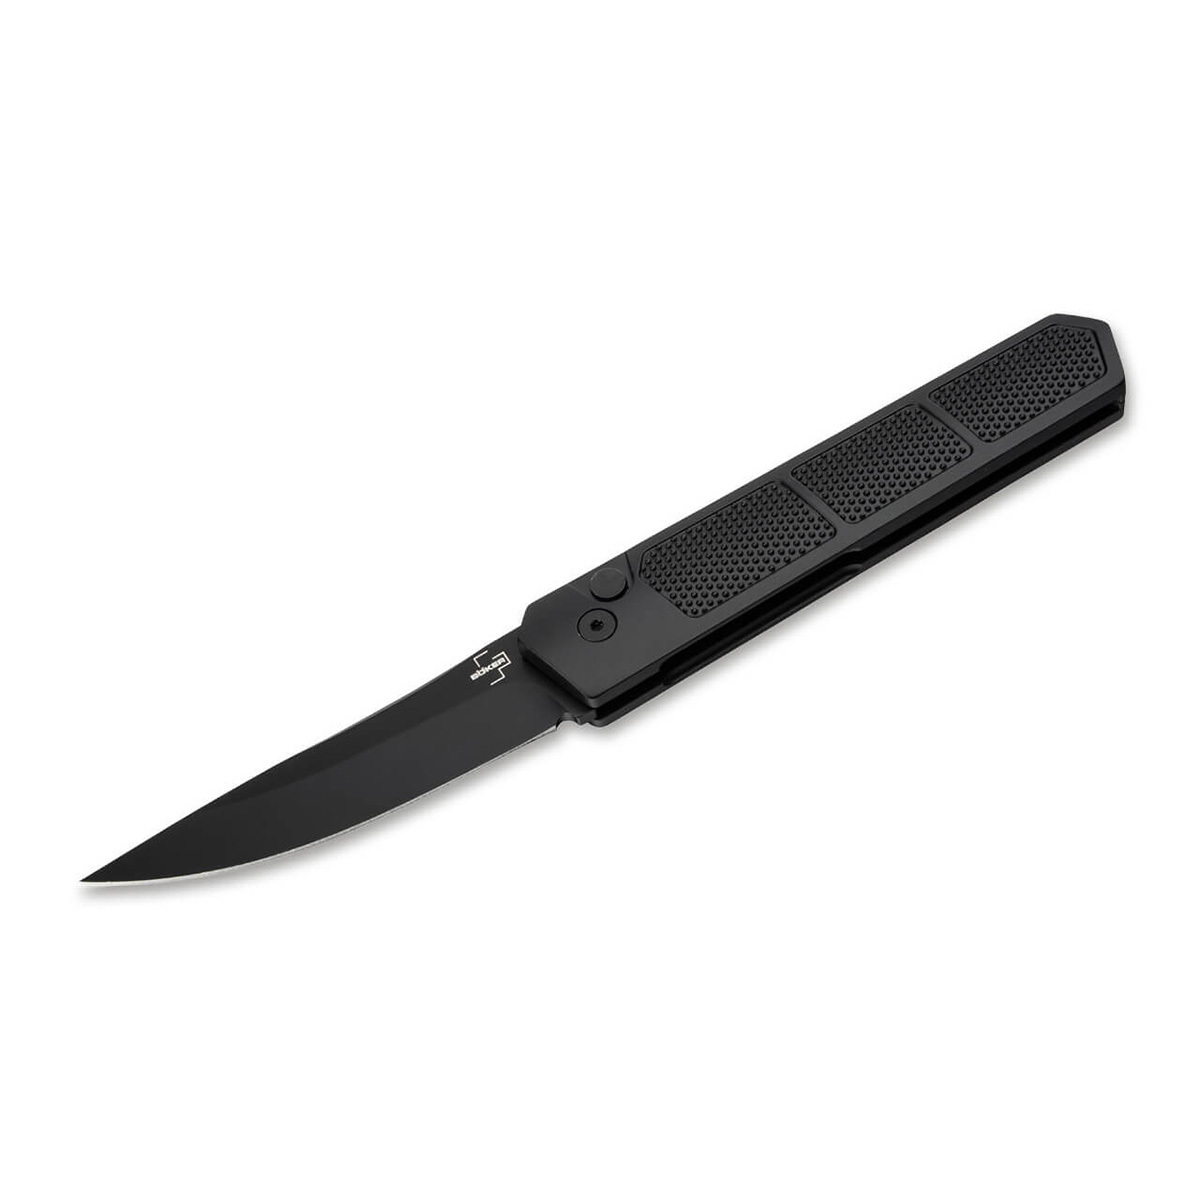 Складной нож Boker Kwaiken Grip Auto Black, сталь D2, рукоять алюминиевый сплав - фото 1